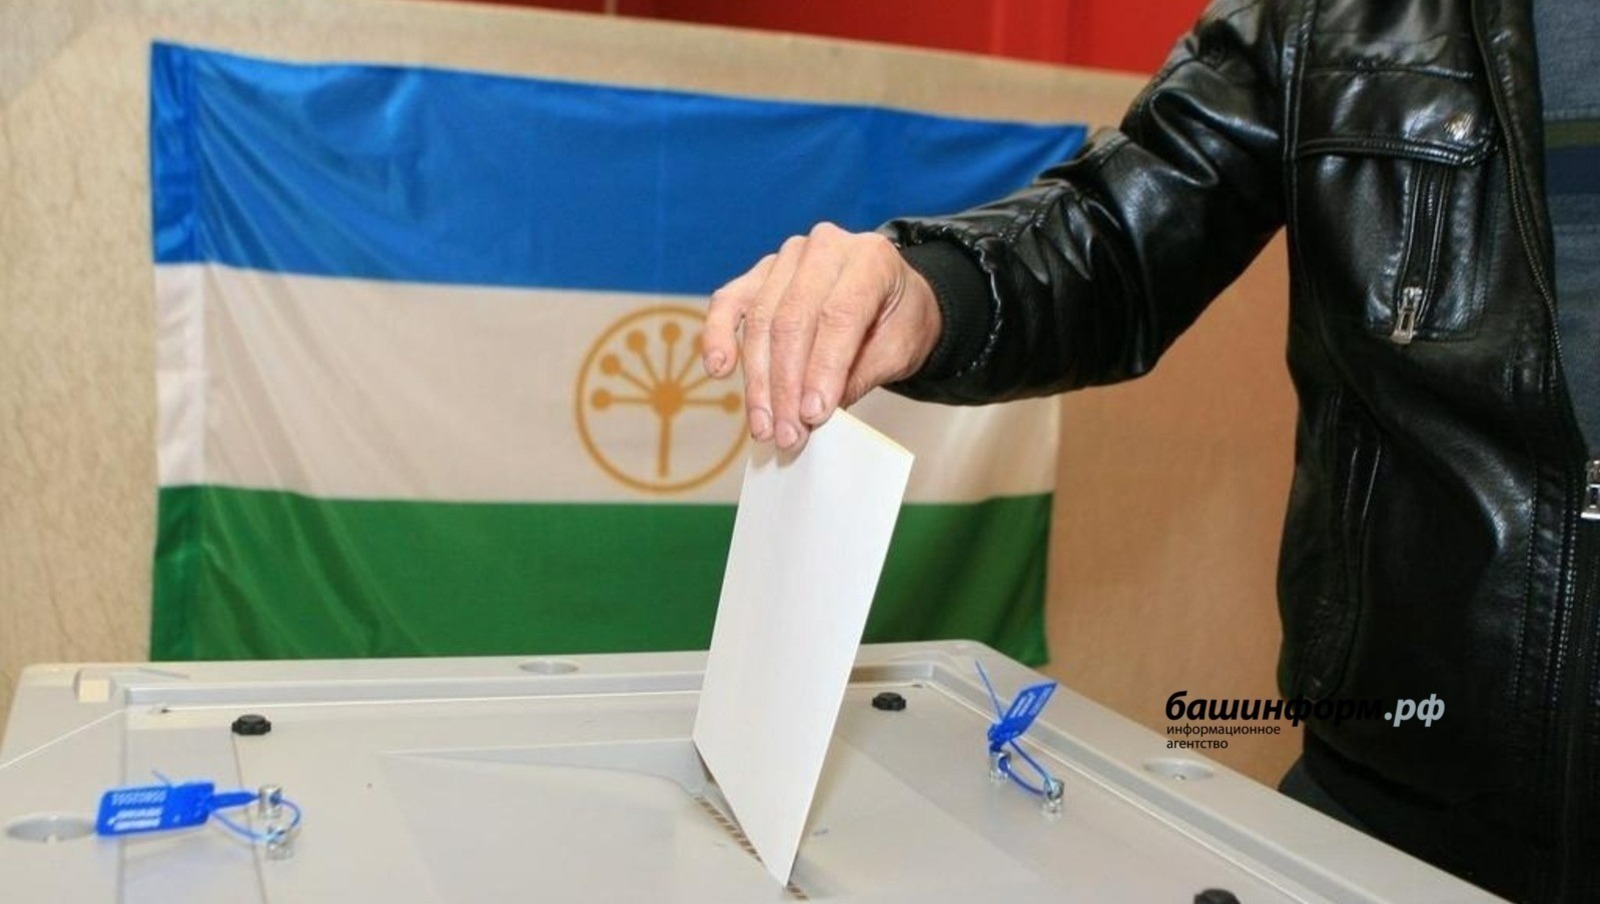 Сегодня, 10 сентября, в Башкирии и по всей стране  начинается Единый день голосования